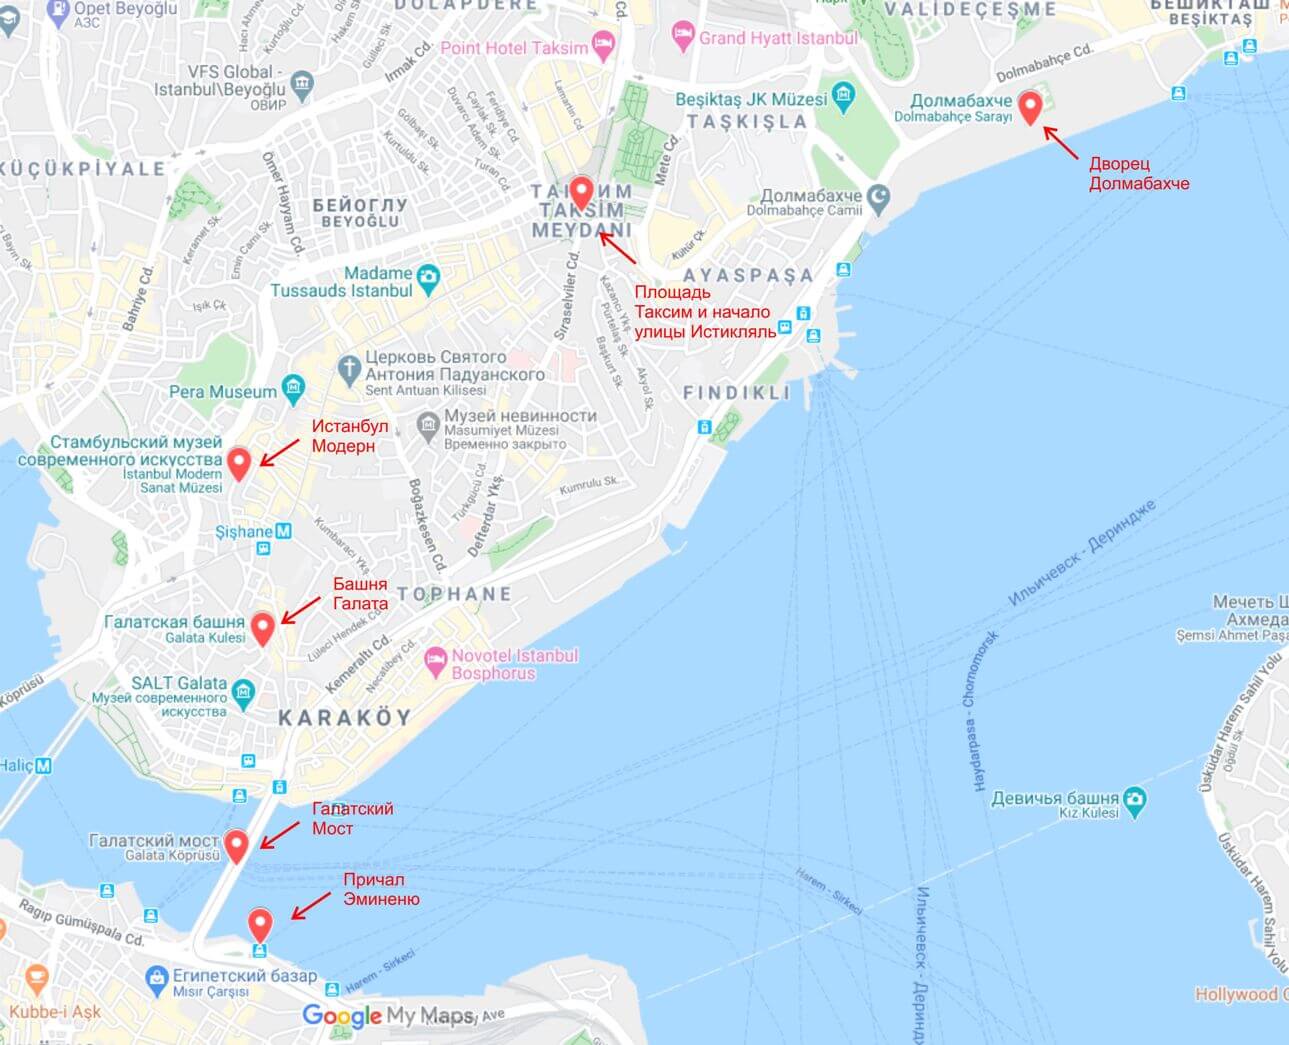 Центр стамбула на карте. Туристические районы Стамбула на карте. Карта центра Стамбула с достопримечательностями. Достопримечательности Стамбула на карте. Достопримечательности Стамбула на карте Стамбула.